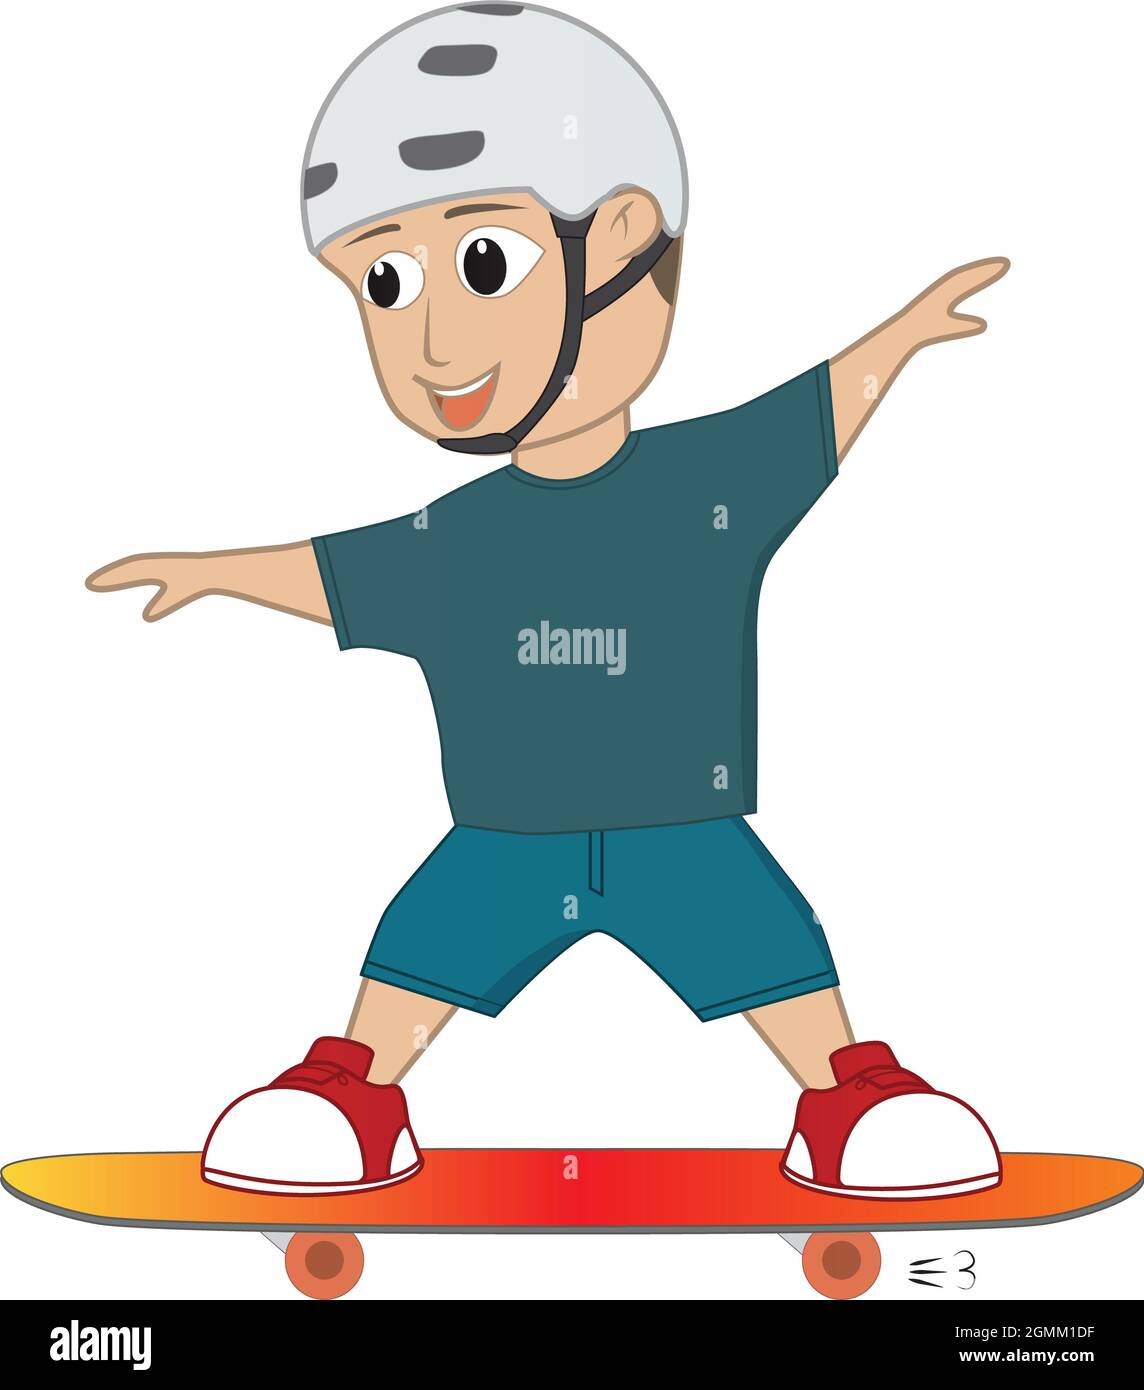 Un jour ensoleillé, un sympathique garçon faisait du skateboard. Il skate  avec son skateboard et semble heureux aussi Photo Stock - Alamy